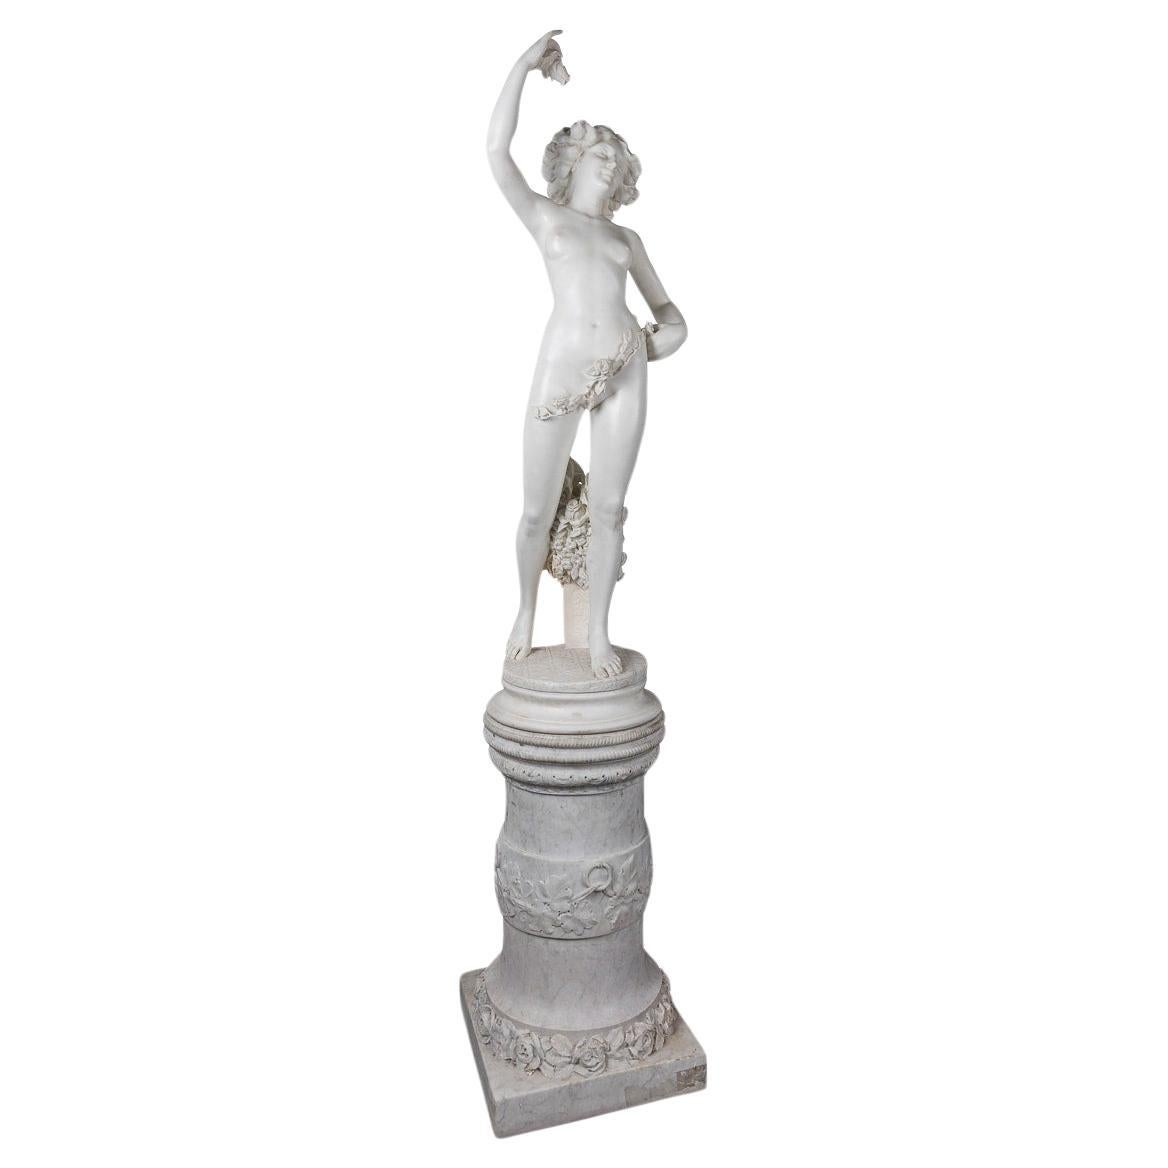 Figure d'un nu, Adolfo Cipriani (1880-1930), Italie, marbre du 19e siècle